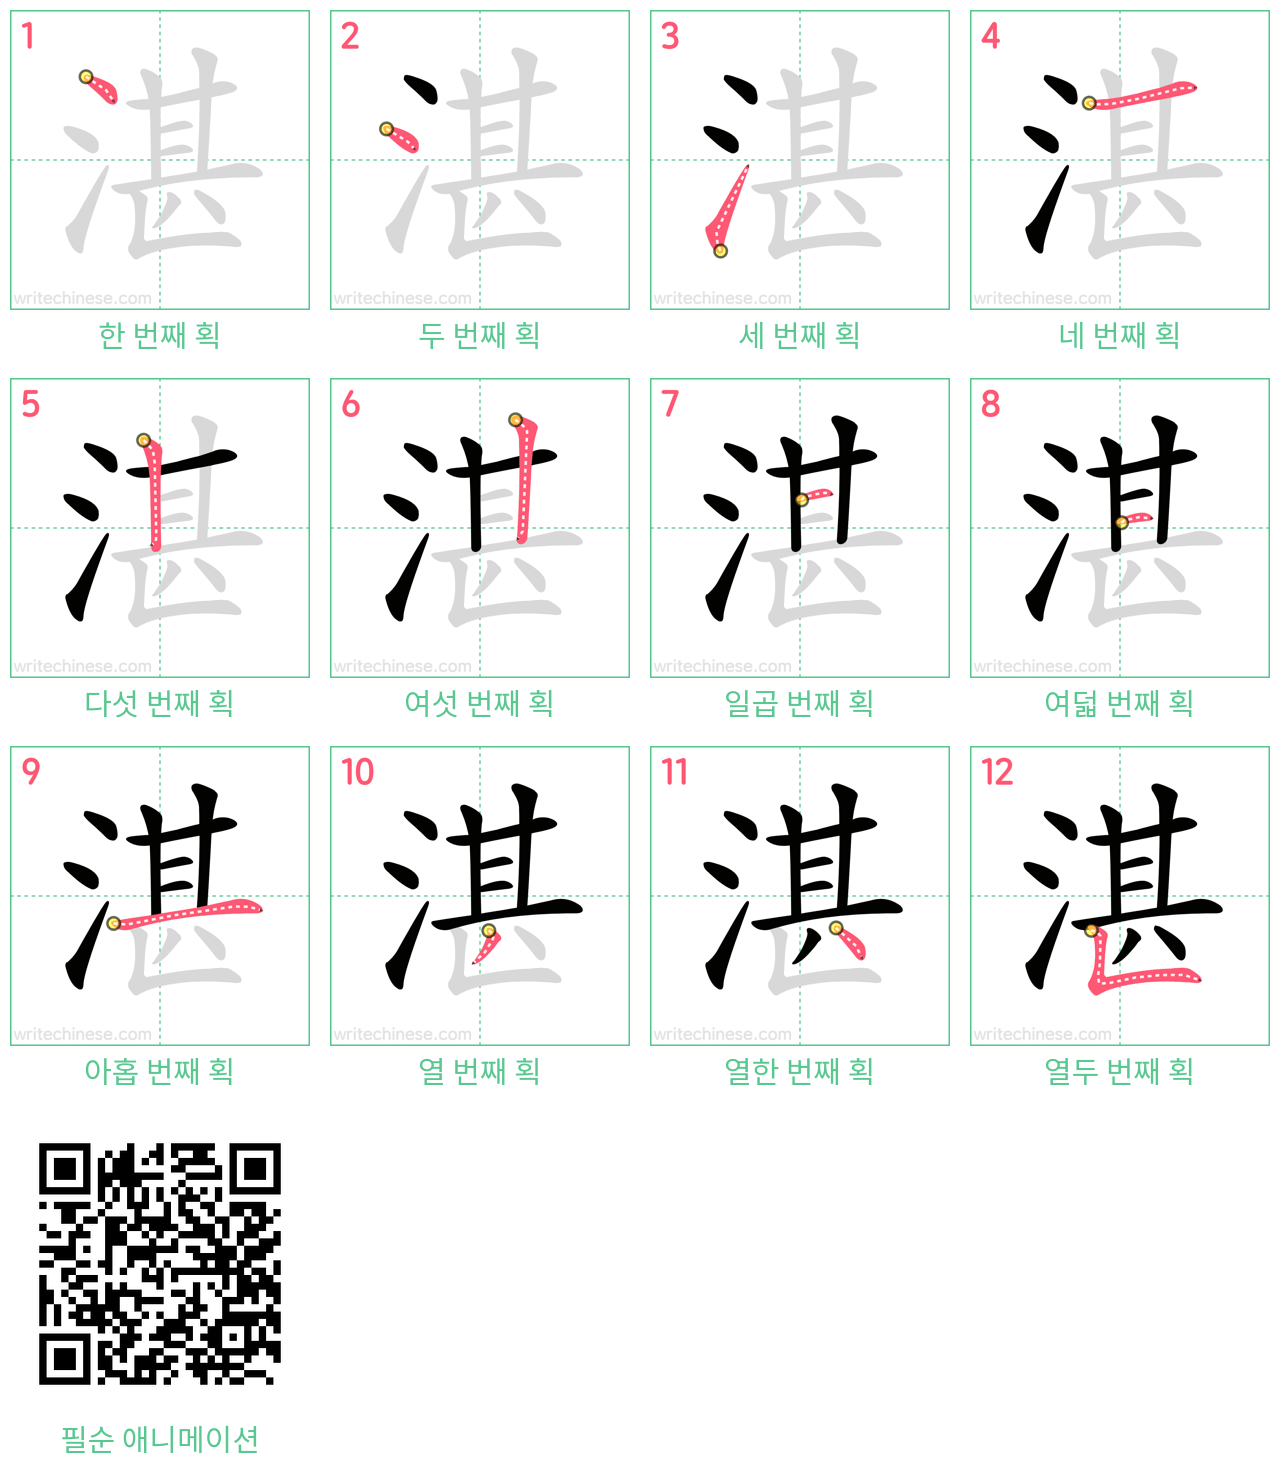 湛 step-by-step stroke order diagrams